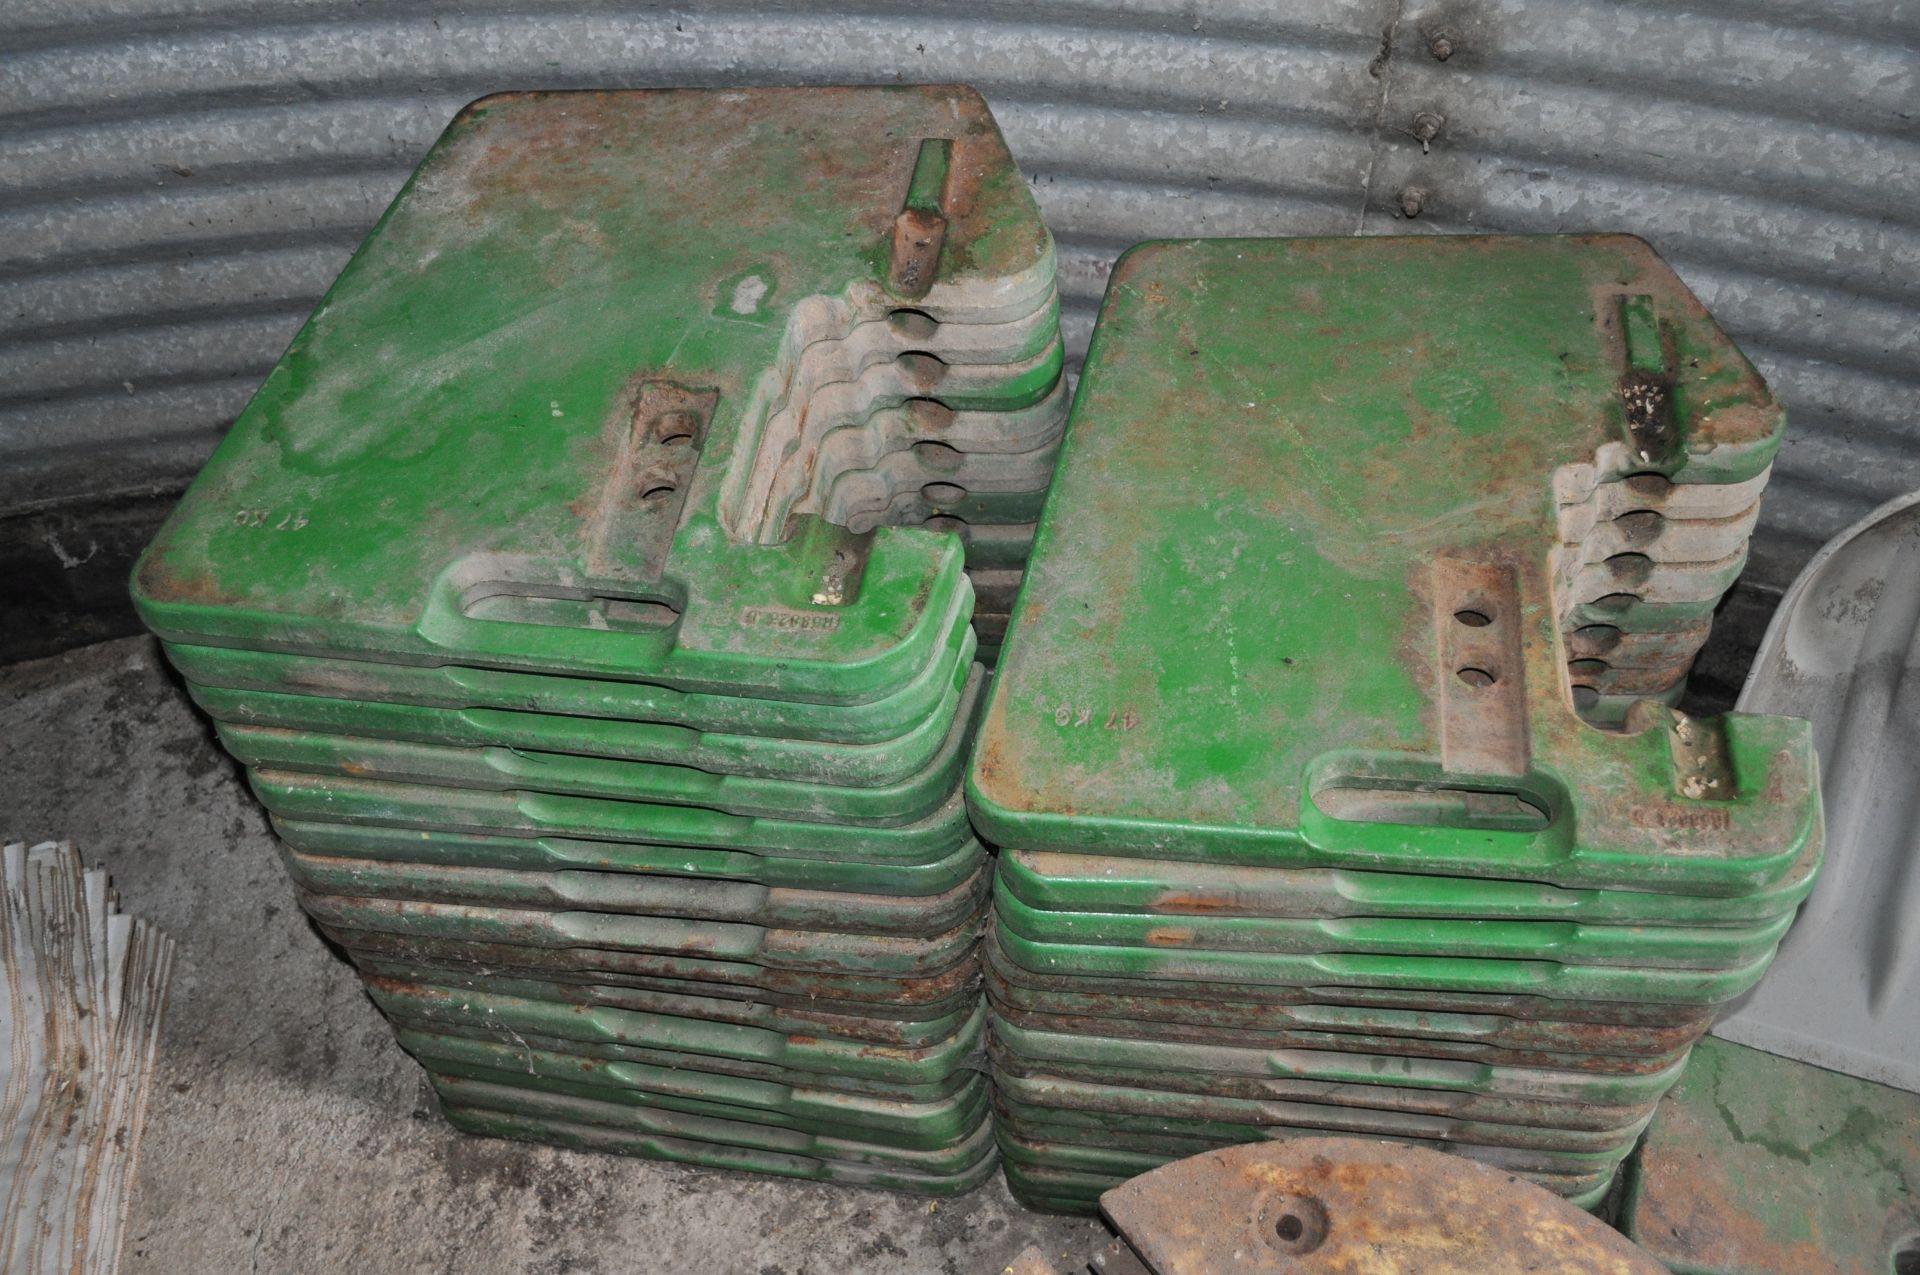 (5) John Deere suitcase weights